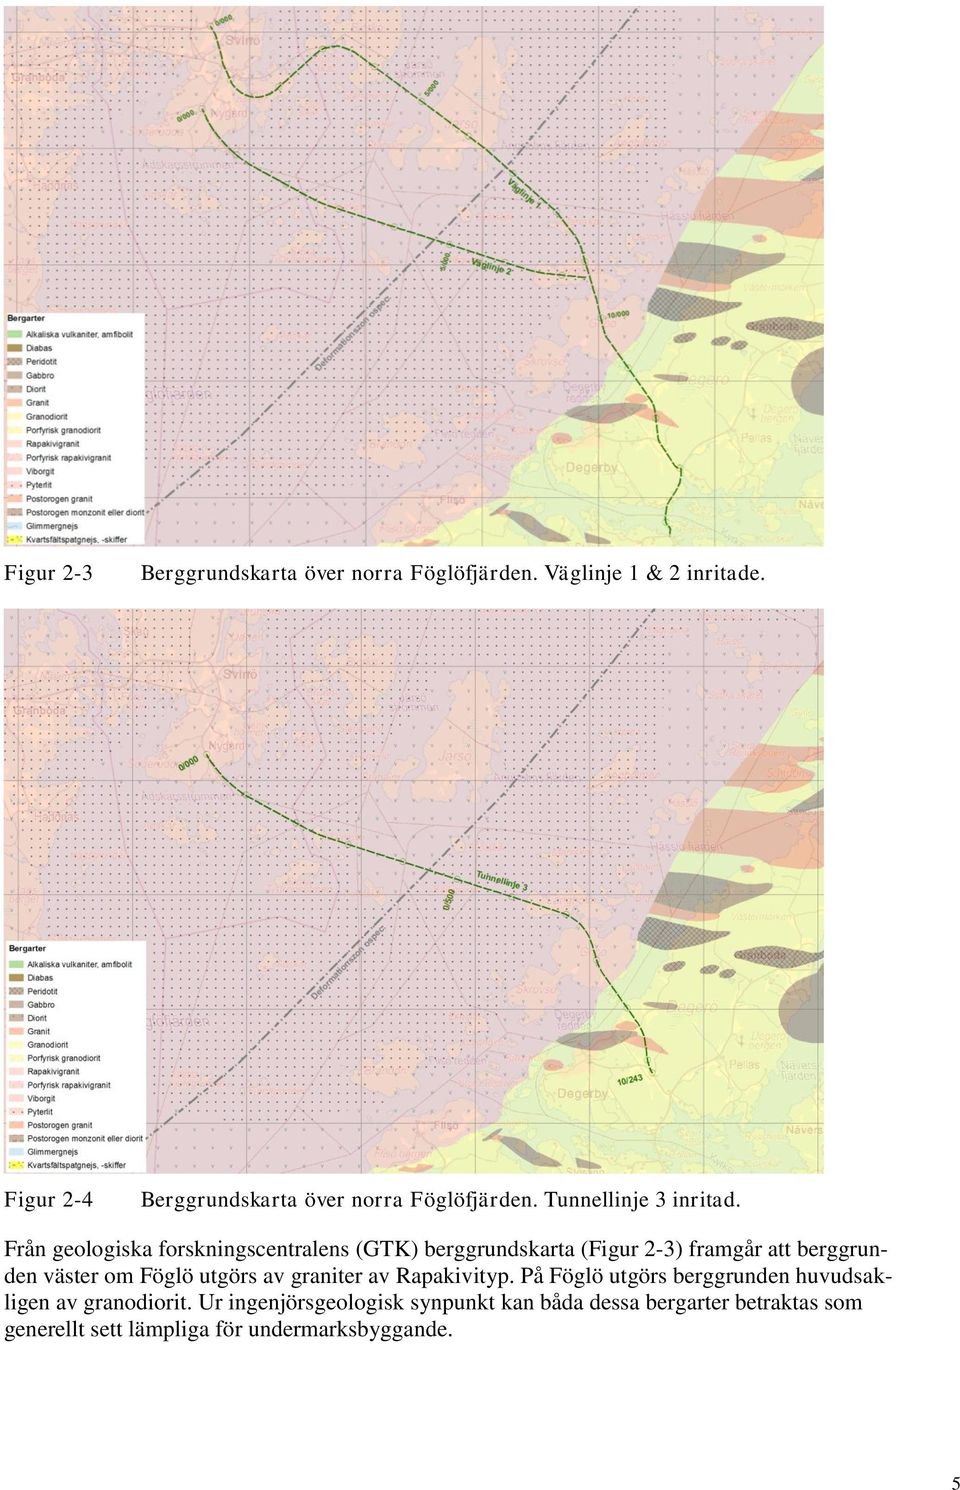 Från geologiska forskningscentralens (GTK) berggrundskarta (Figur 2-3) framgår att berggrunden väster om Föglö utgörs